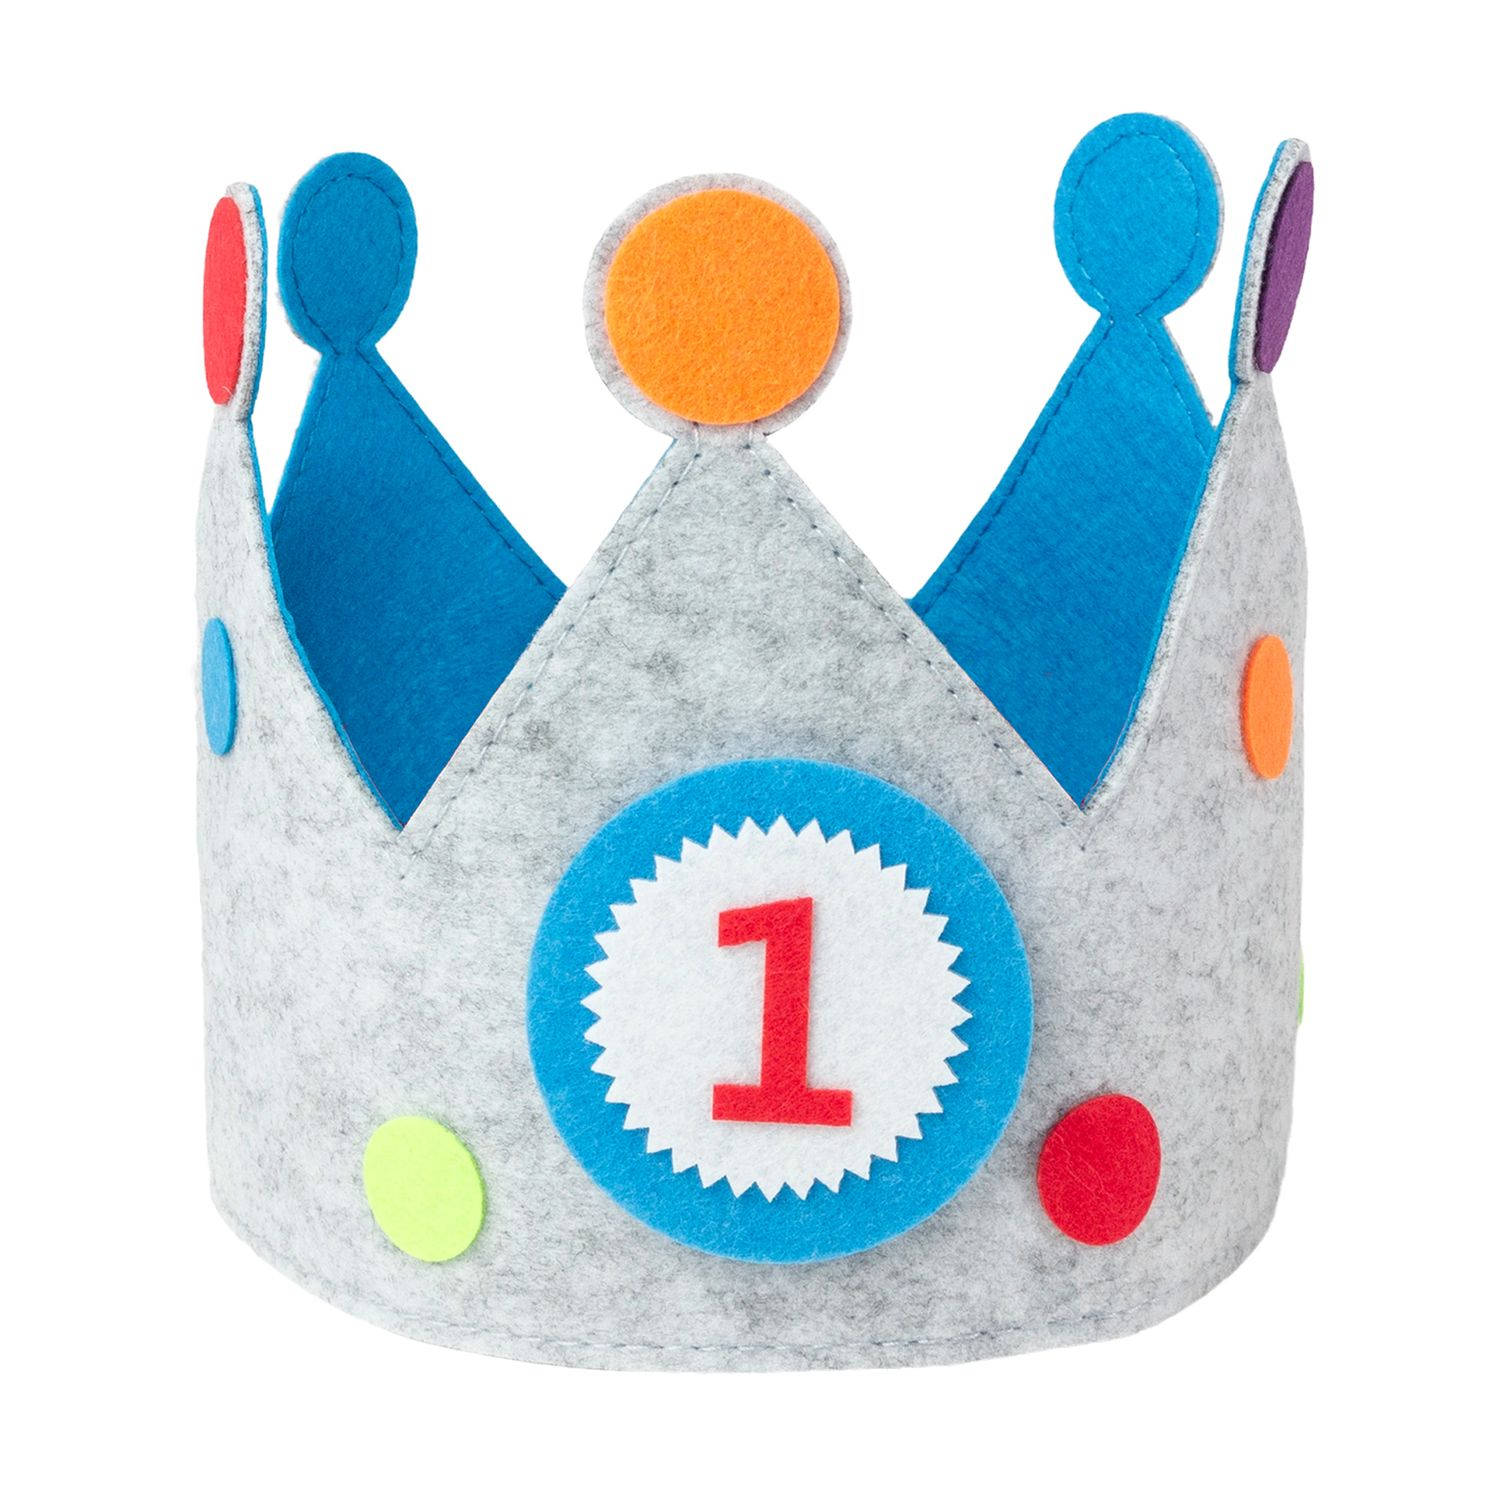 Intirilife Vilten Verjaardagskroon met Verwisselbare Nummers 0 - 9 in Blauw-Grijs - 57.5 x 15.5 cm - Verstelbare Kroon voor Jongens en Meisjes, voor Verjaardag, Feest, Kinderen, De